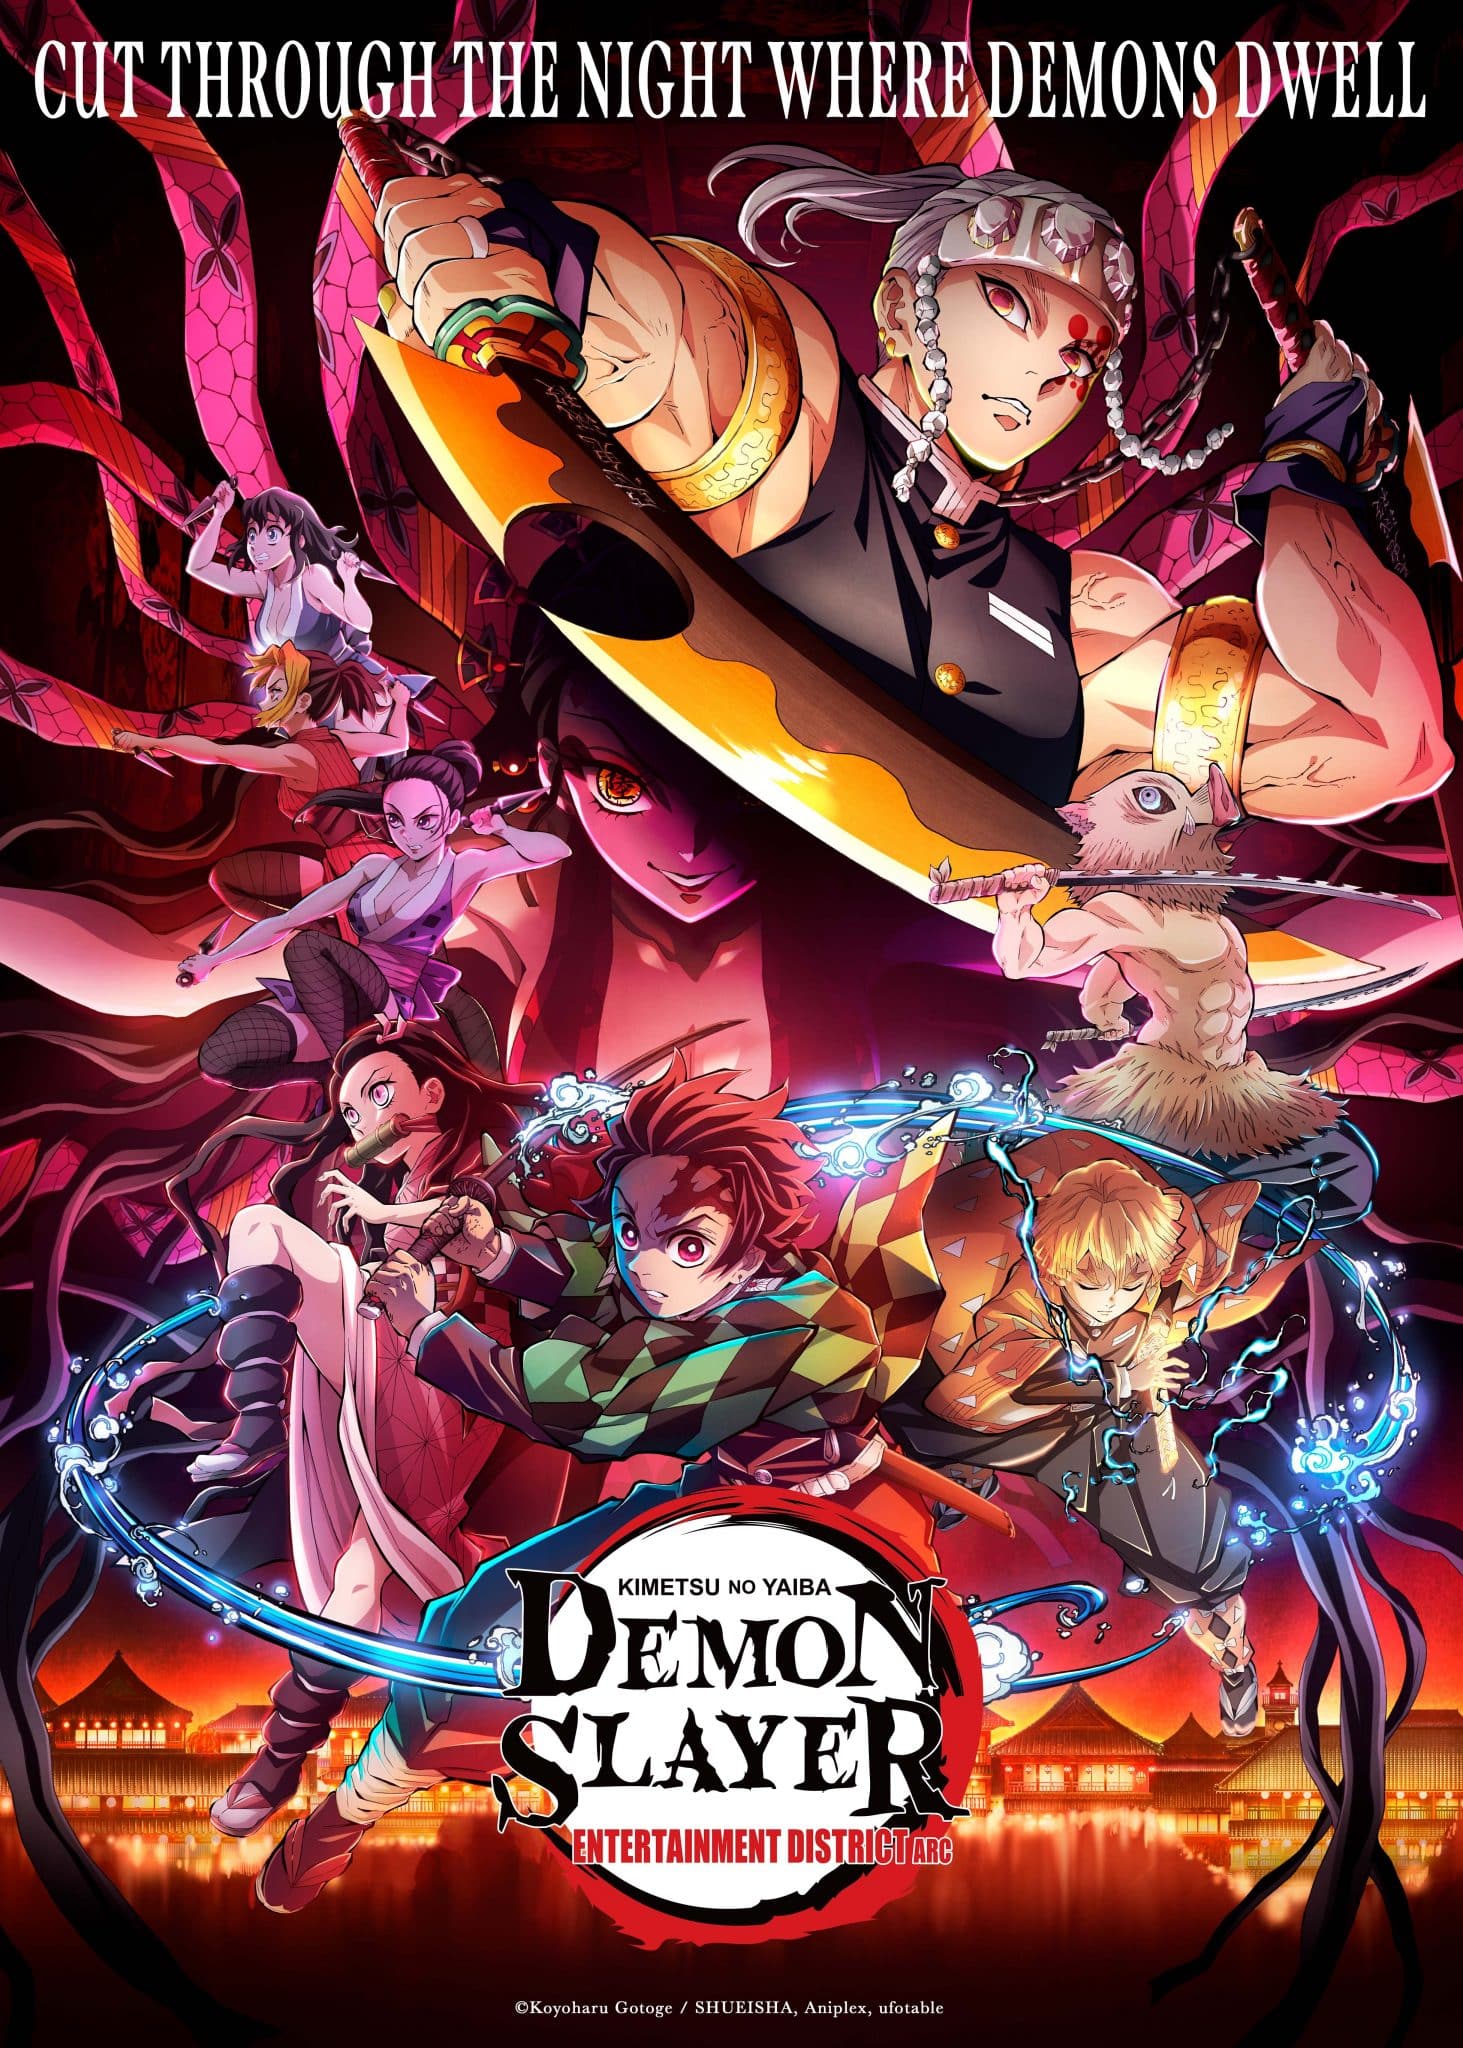 Demon Slayer Season 2 poster full size